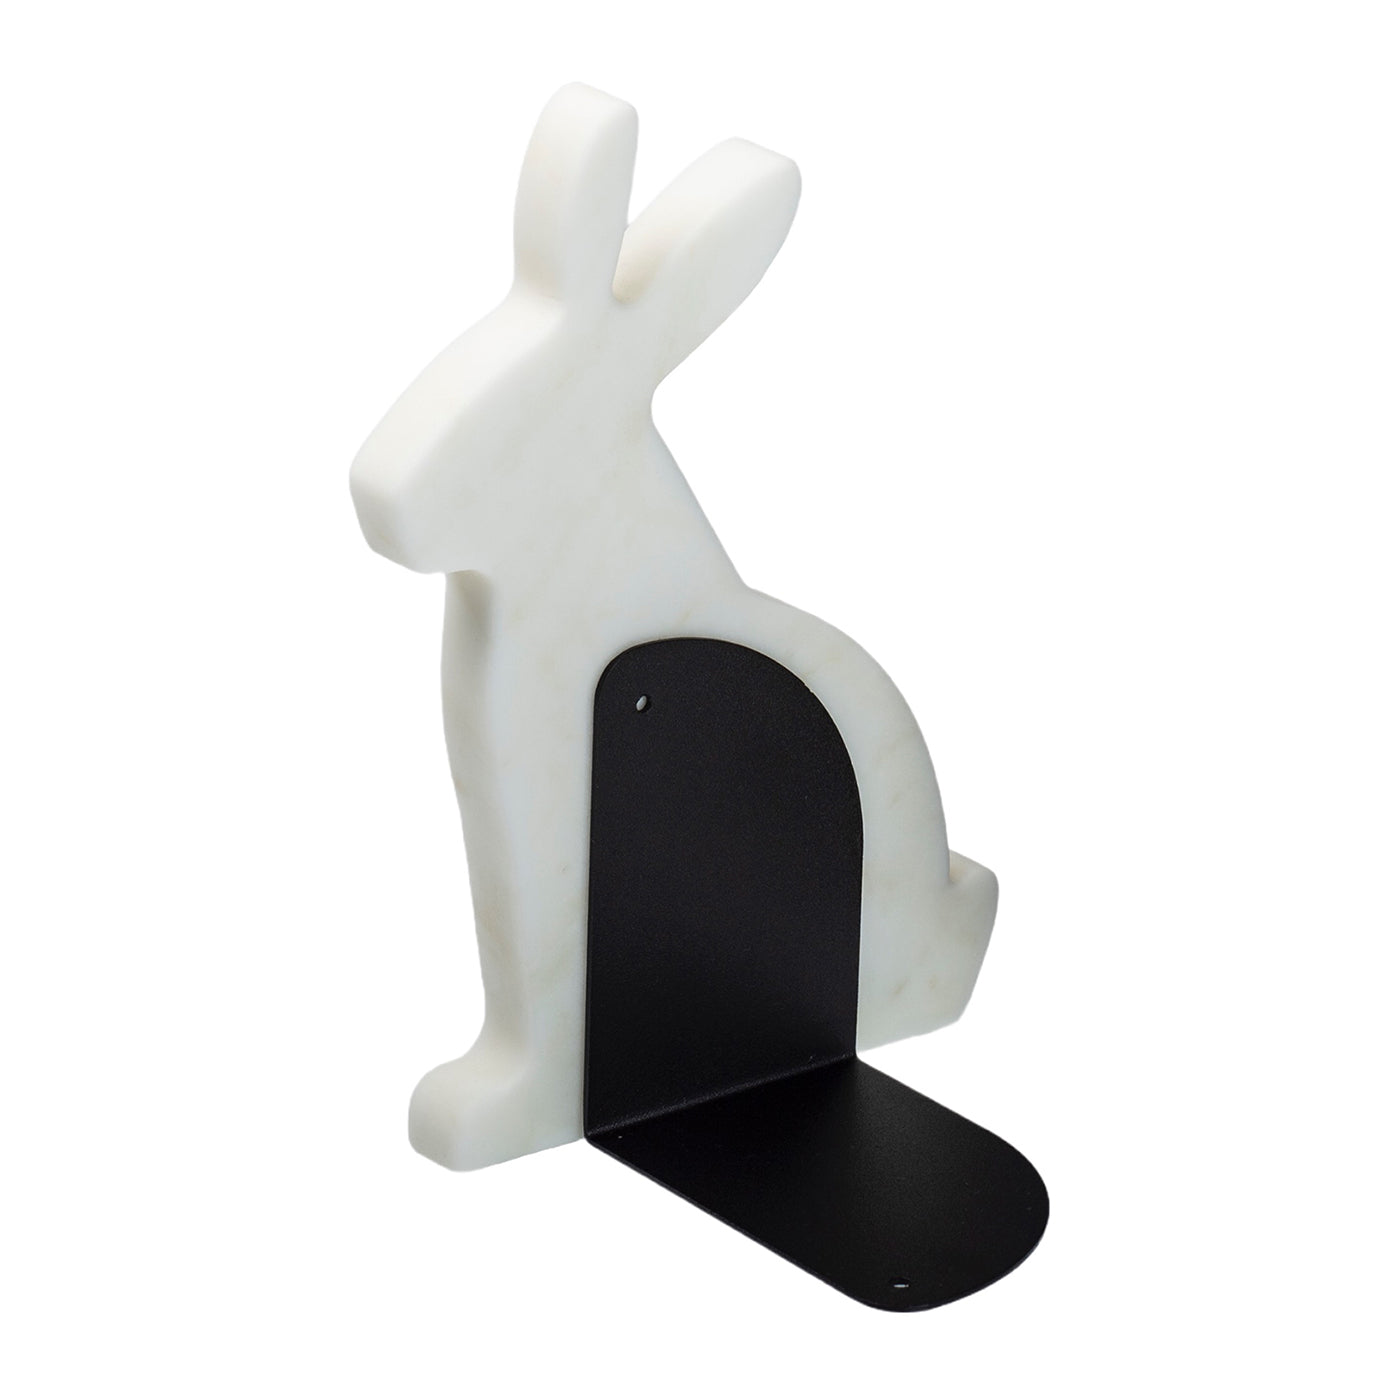 Juego de 2 sujetalibros de carrara blanca Bunny by Alessandra Grasso - Vista alternativa 1